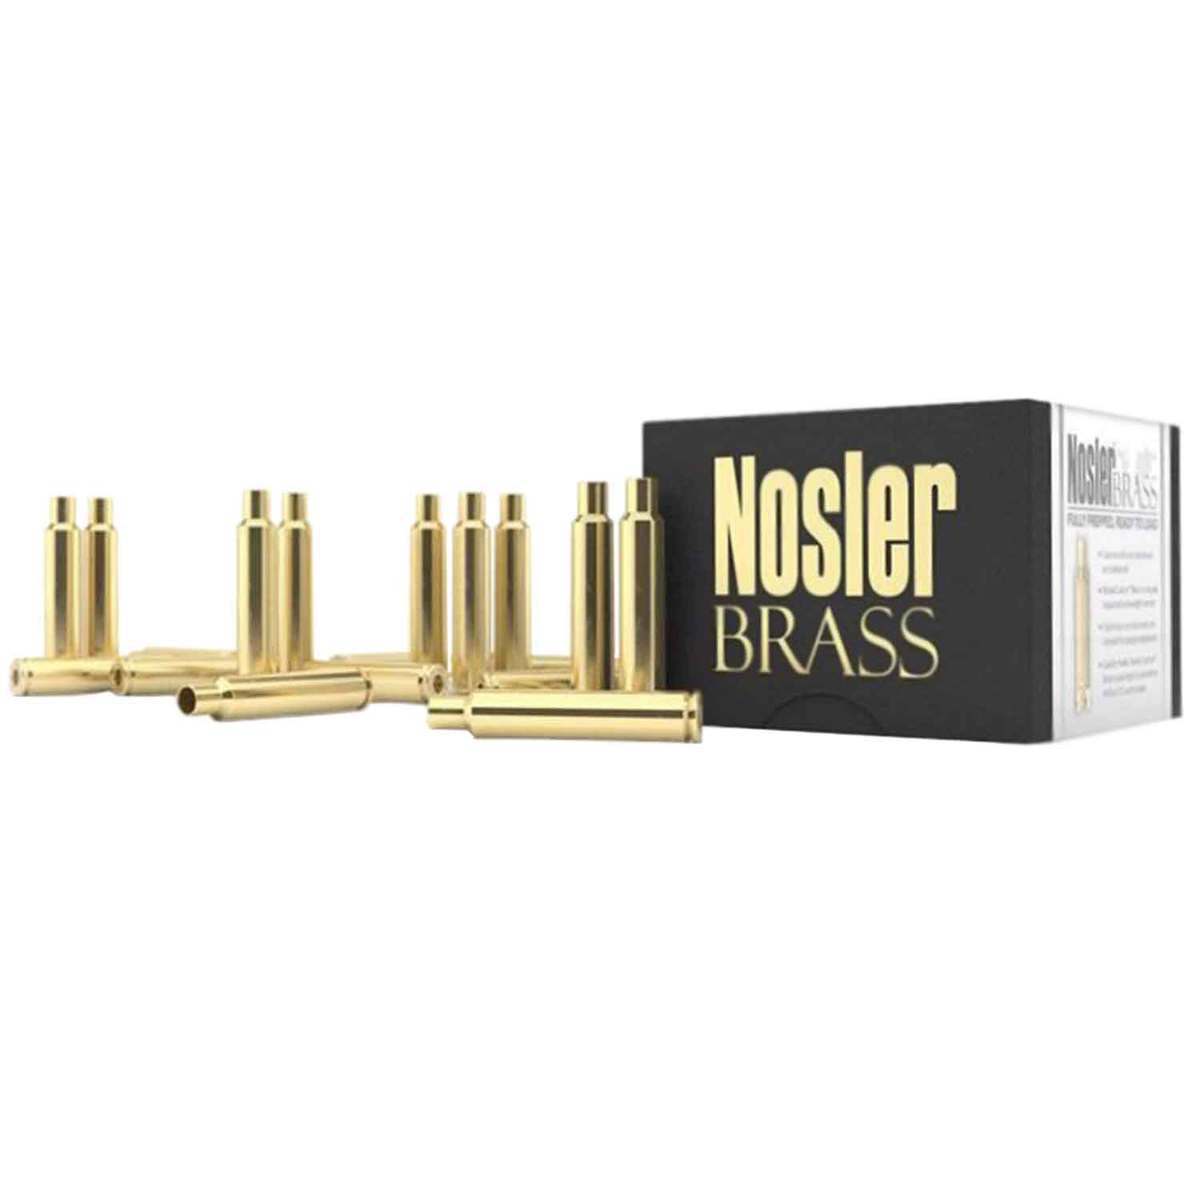 22 NOSLER brass (Nosler, QTY 50)